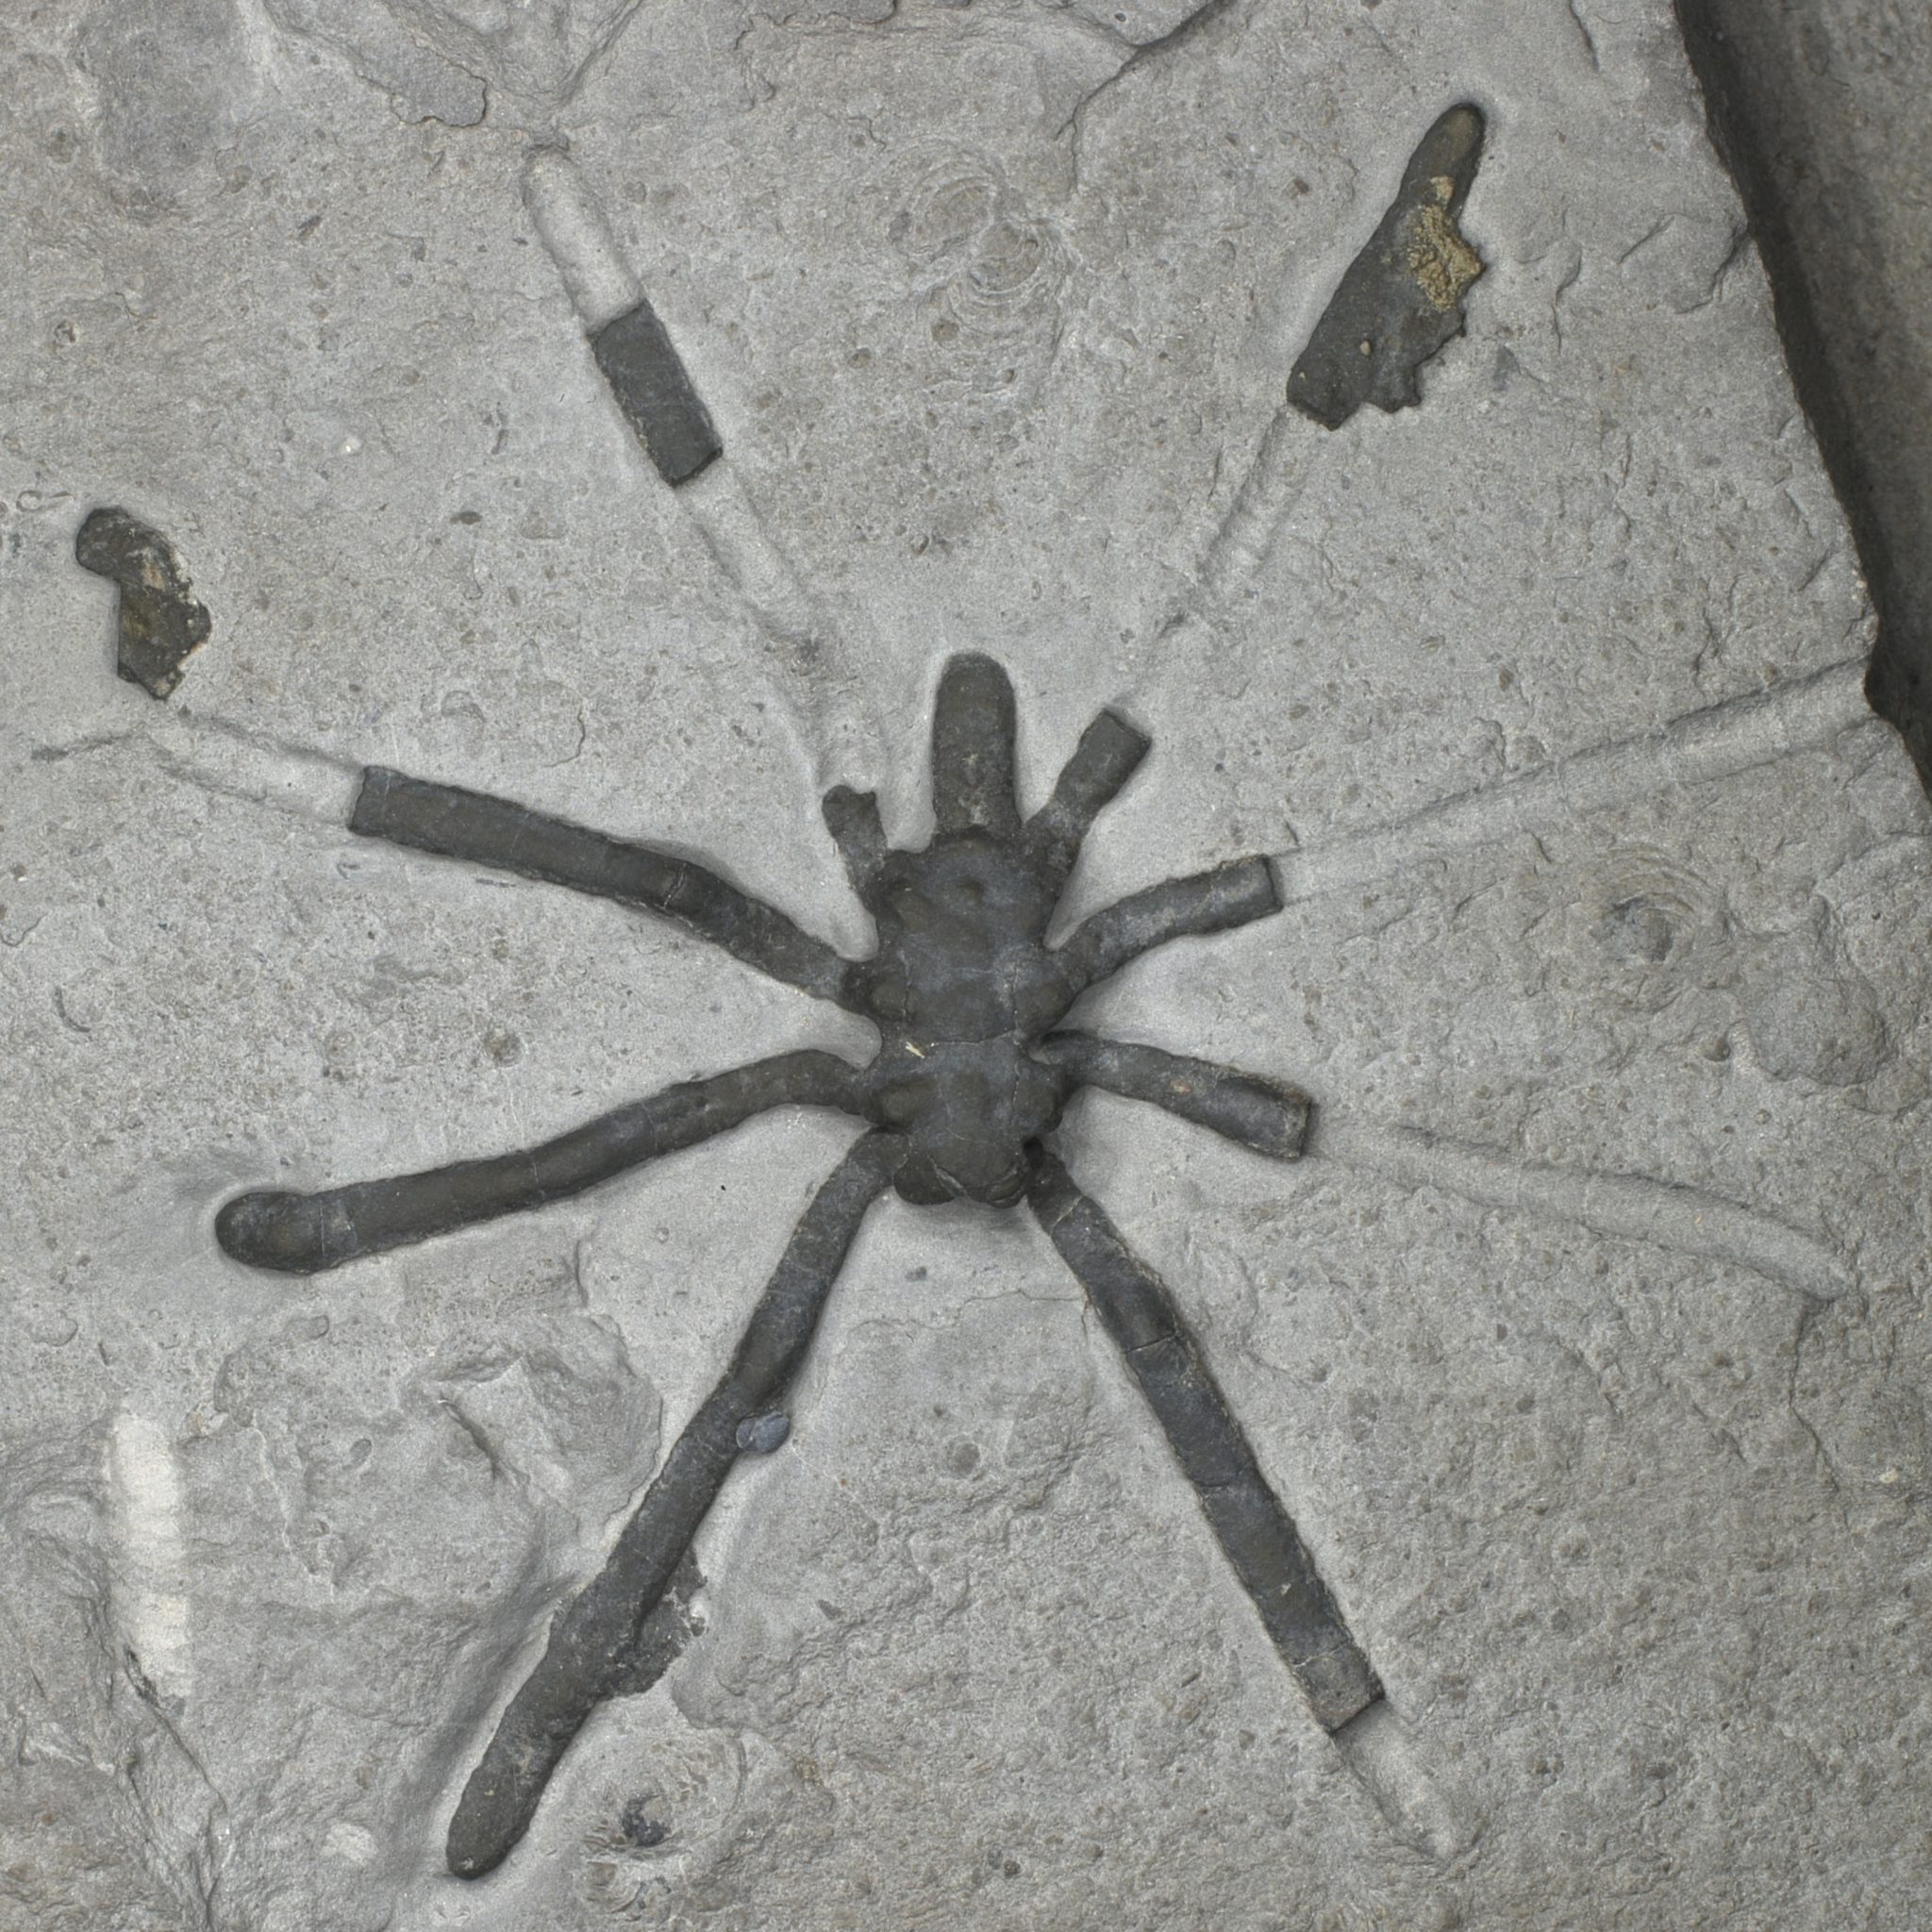 Los científicos encuentran una colección extremadamente rara de fósiles de arañas marinas de 160 millones de años estrechamente relacionados con especies vivas